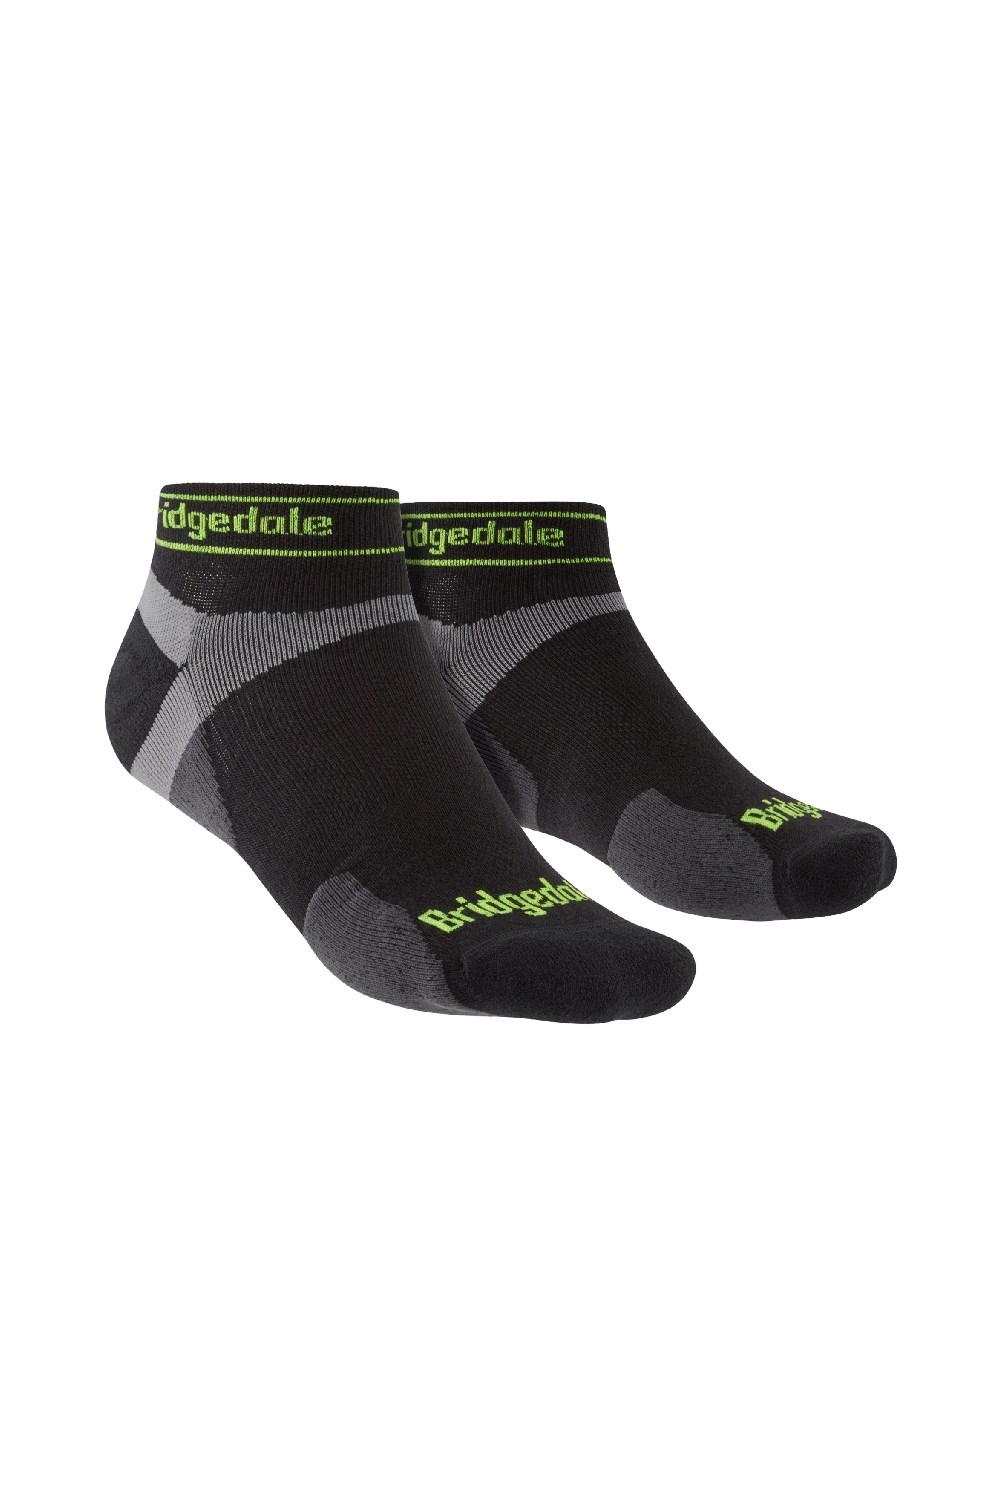 Mens Running Ultralight Merino Socks